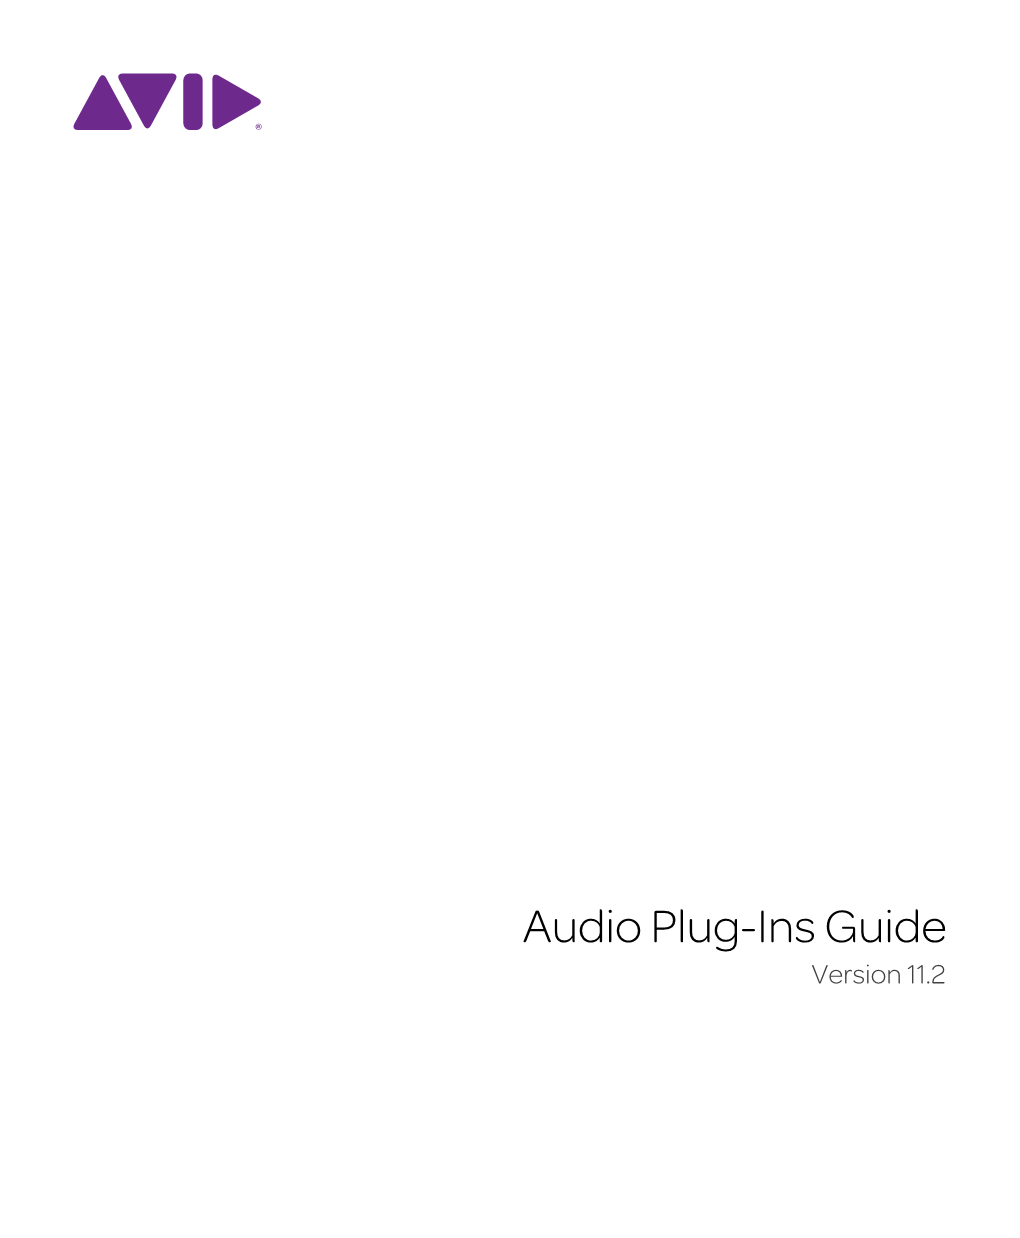 Audio Plug-Ins Guide V11.2